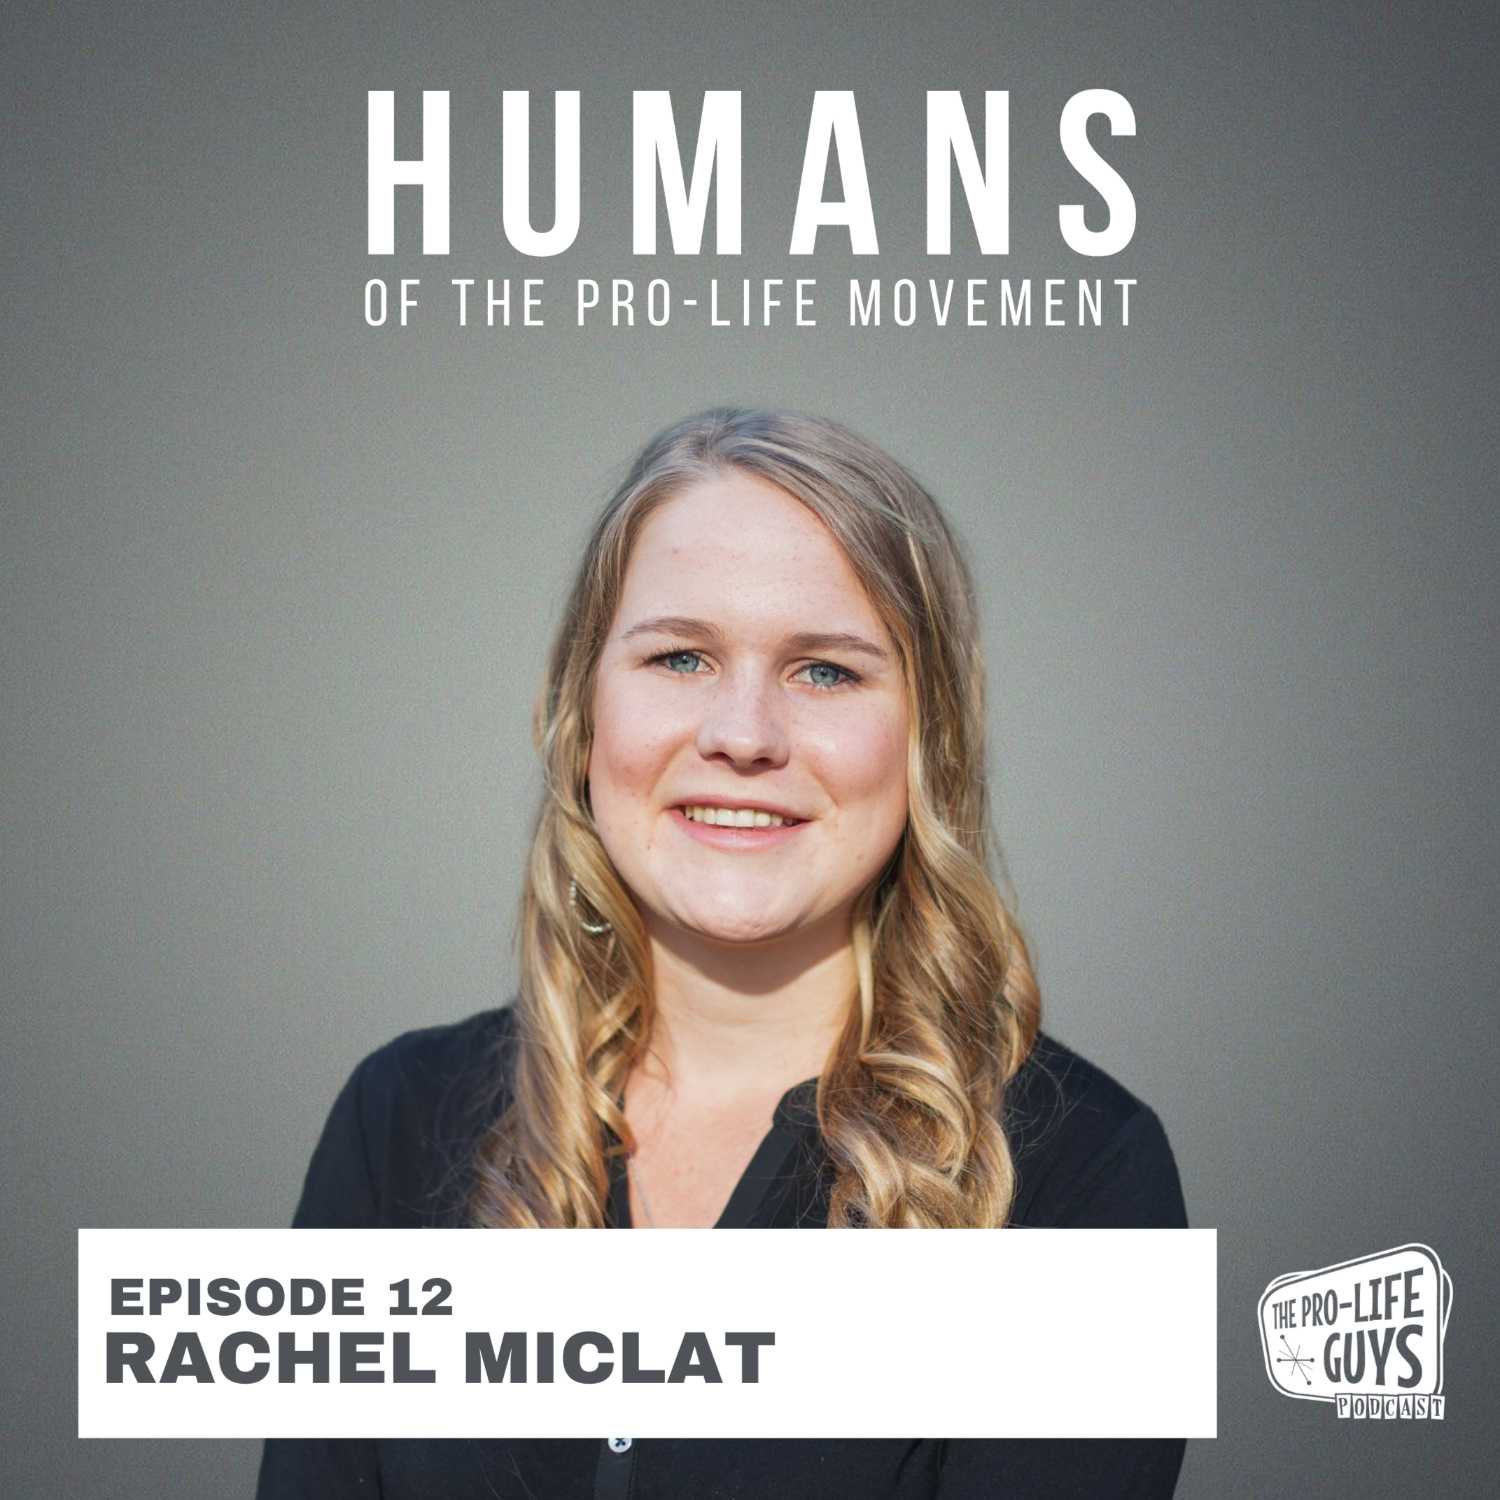 HPLM 12: Rachel Miclat